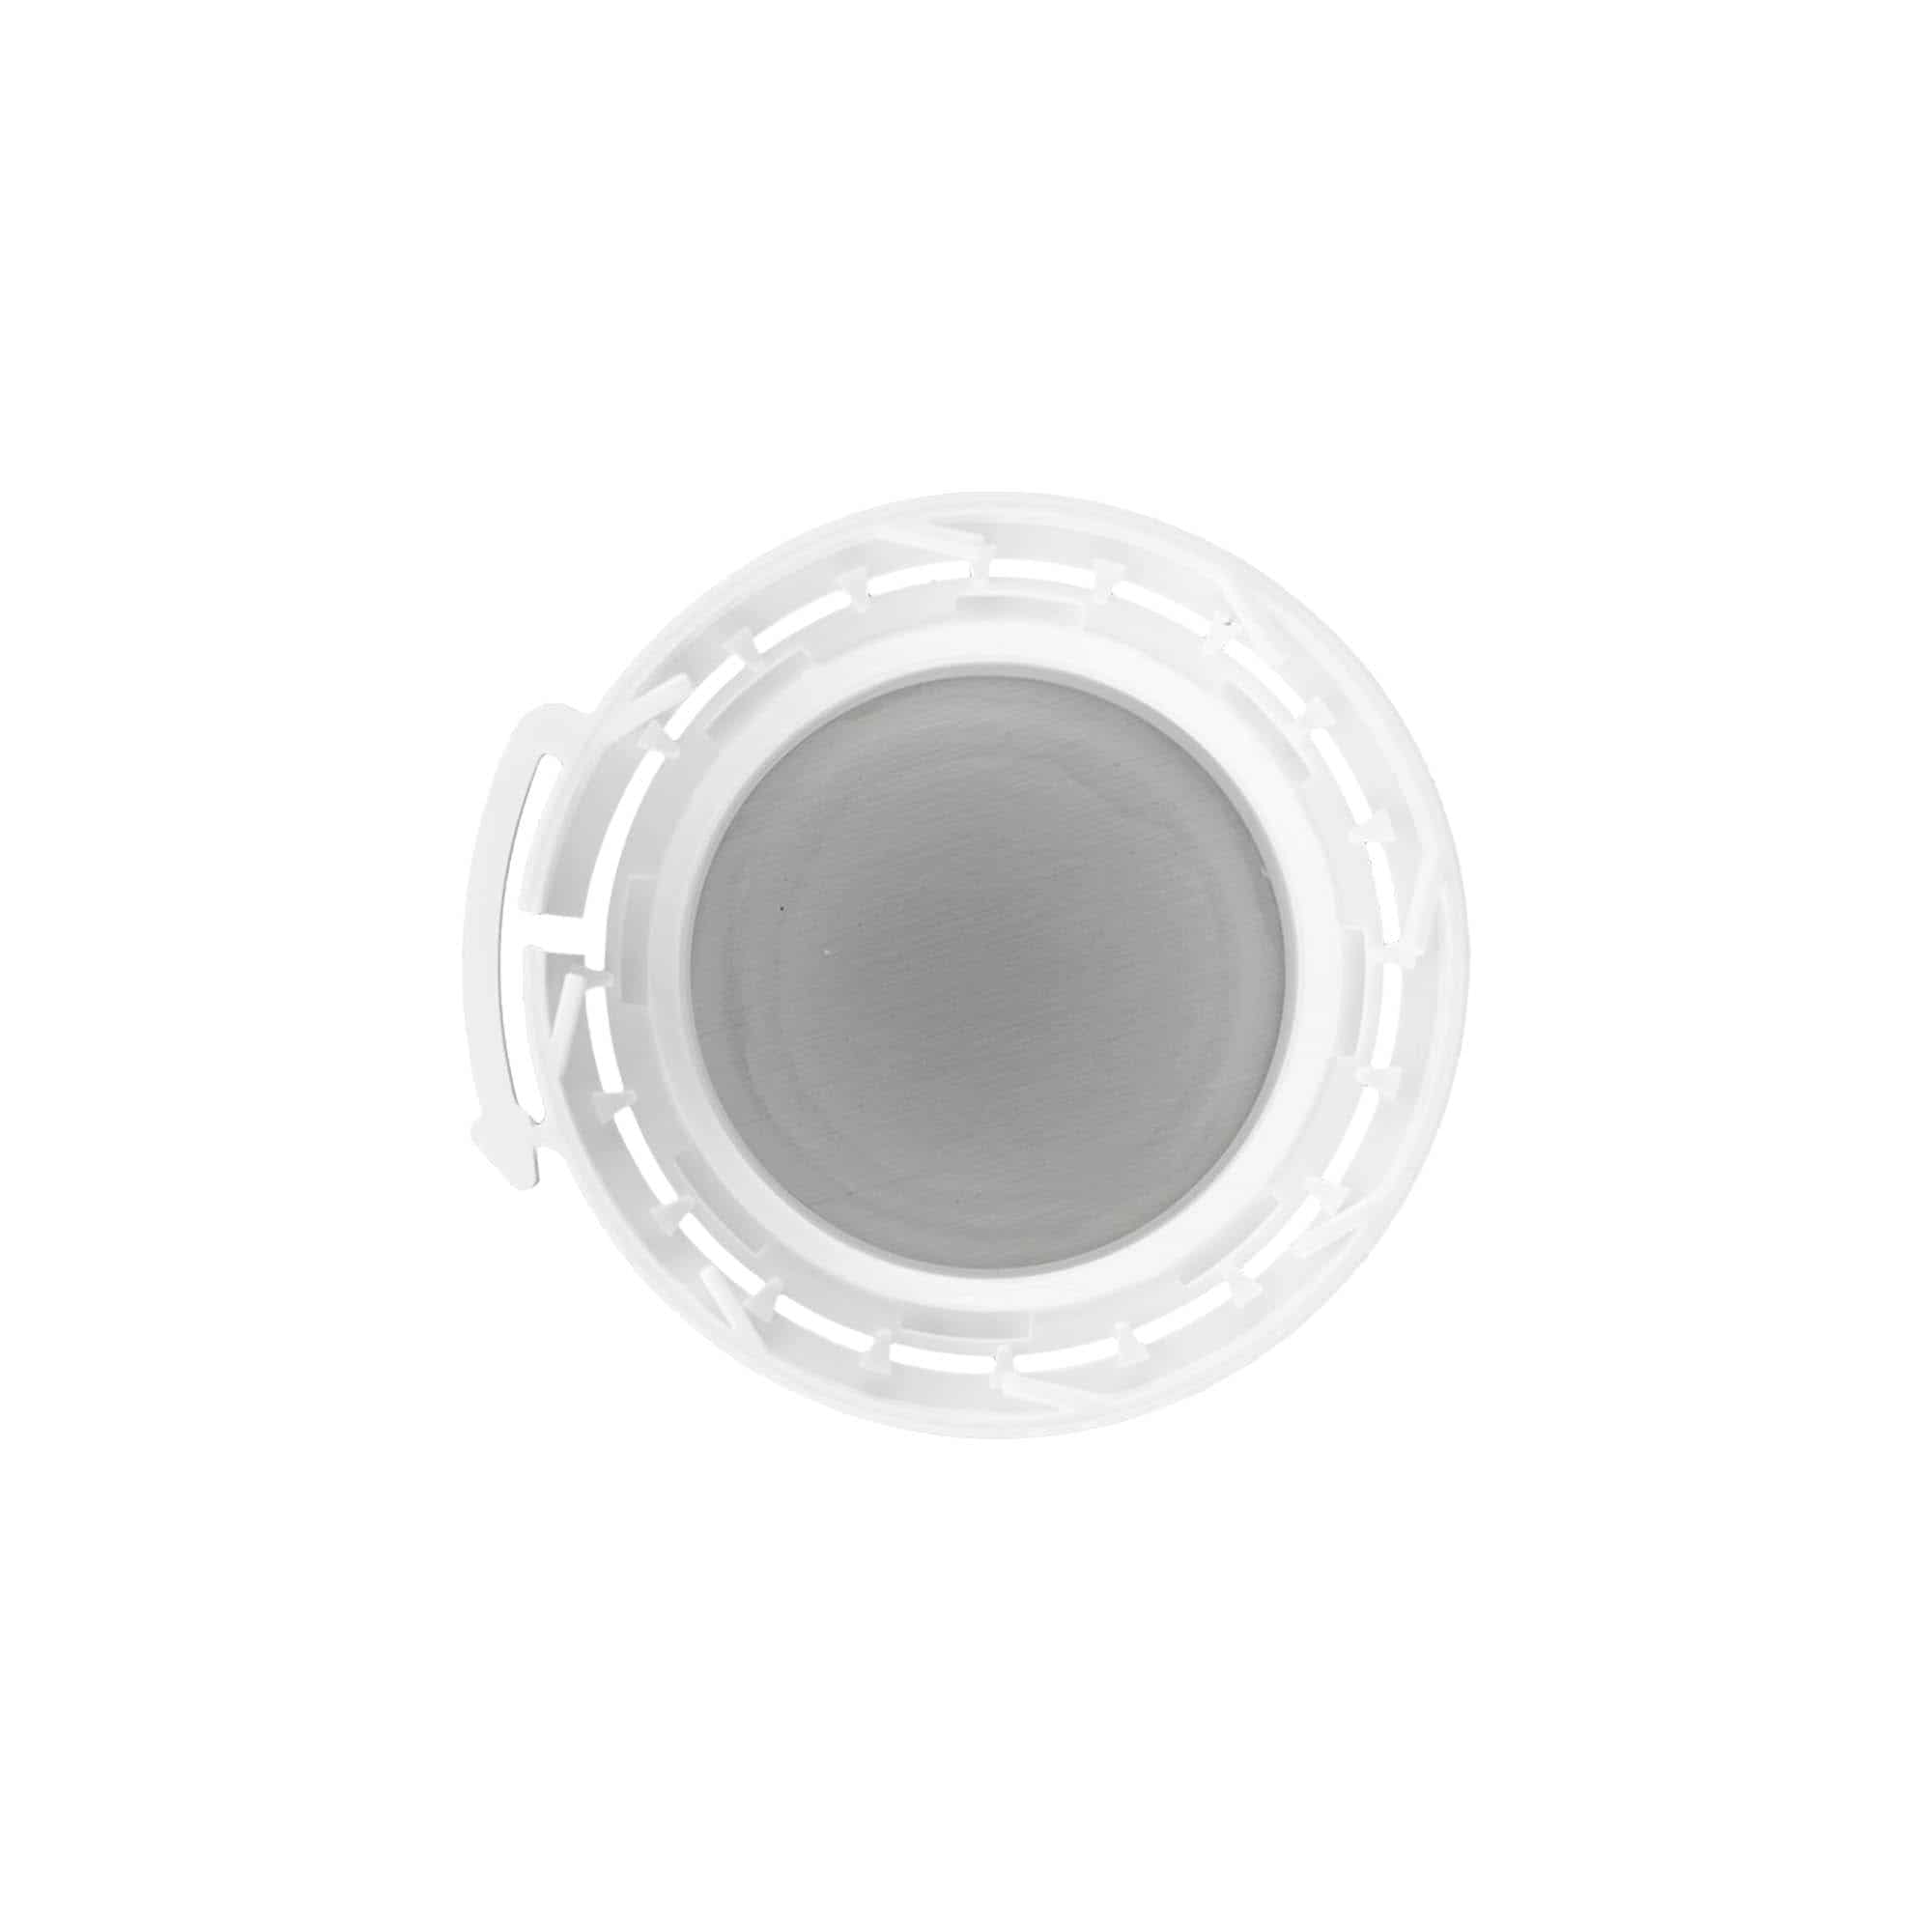 Schraubverschluss Aluflasche, PP-Kunststoff, weiß, für Mündung: DIN 32